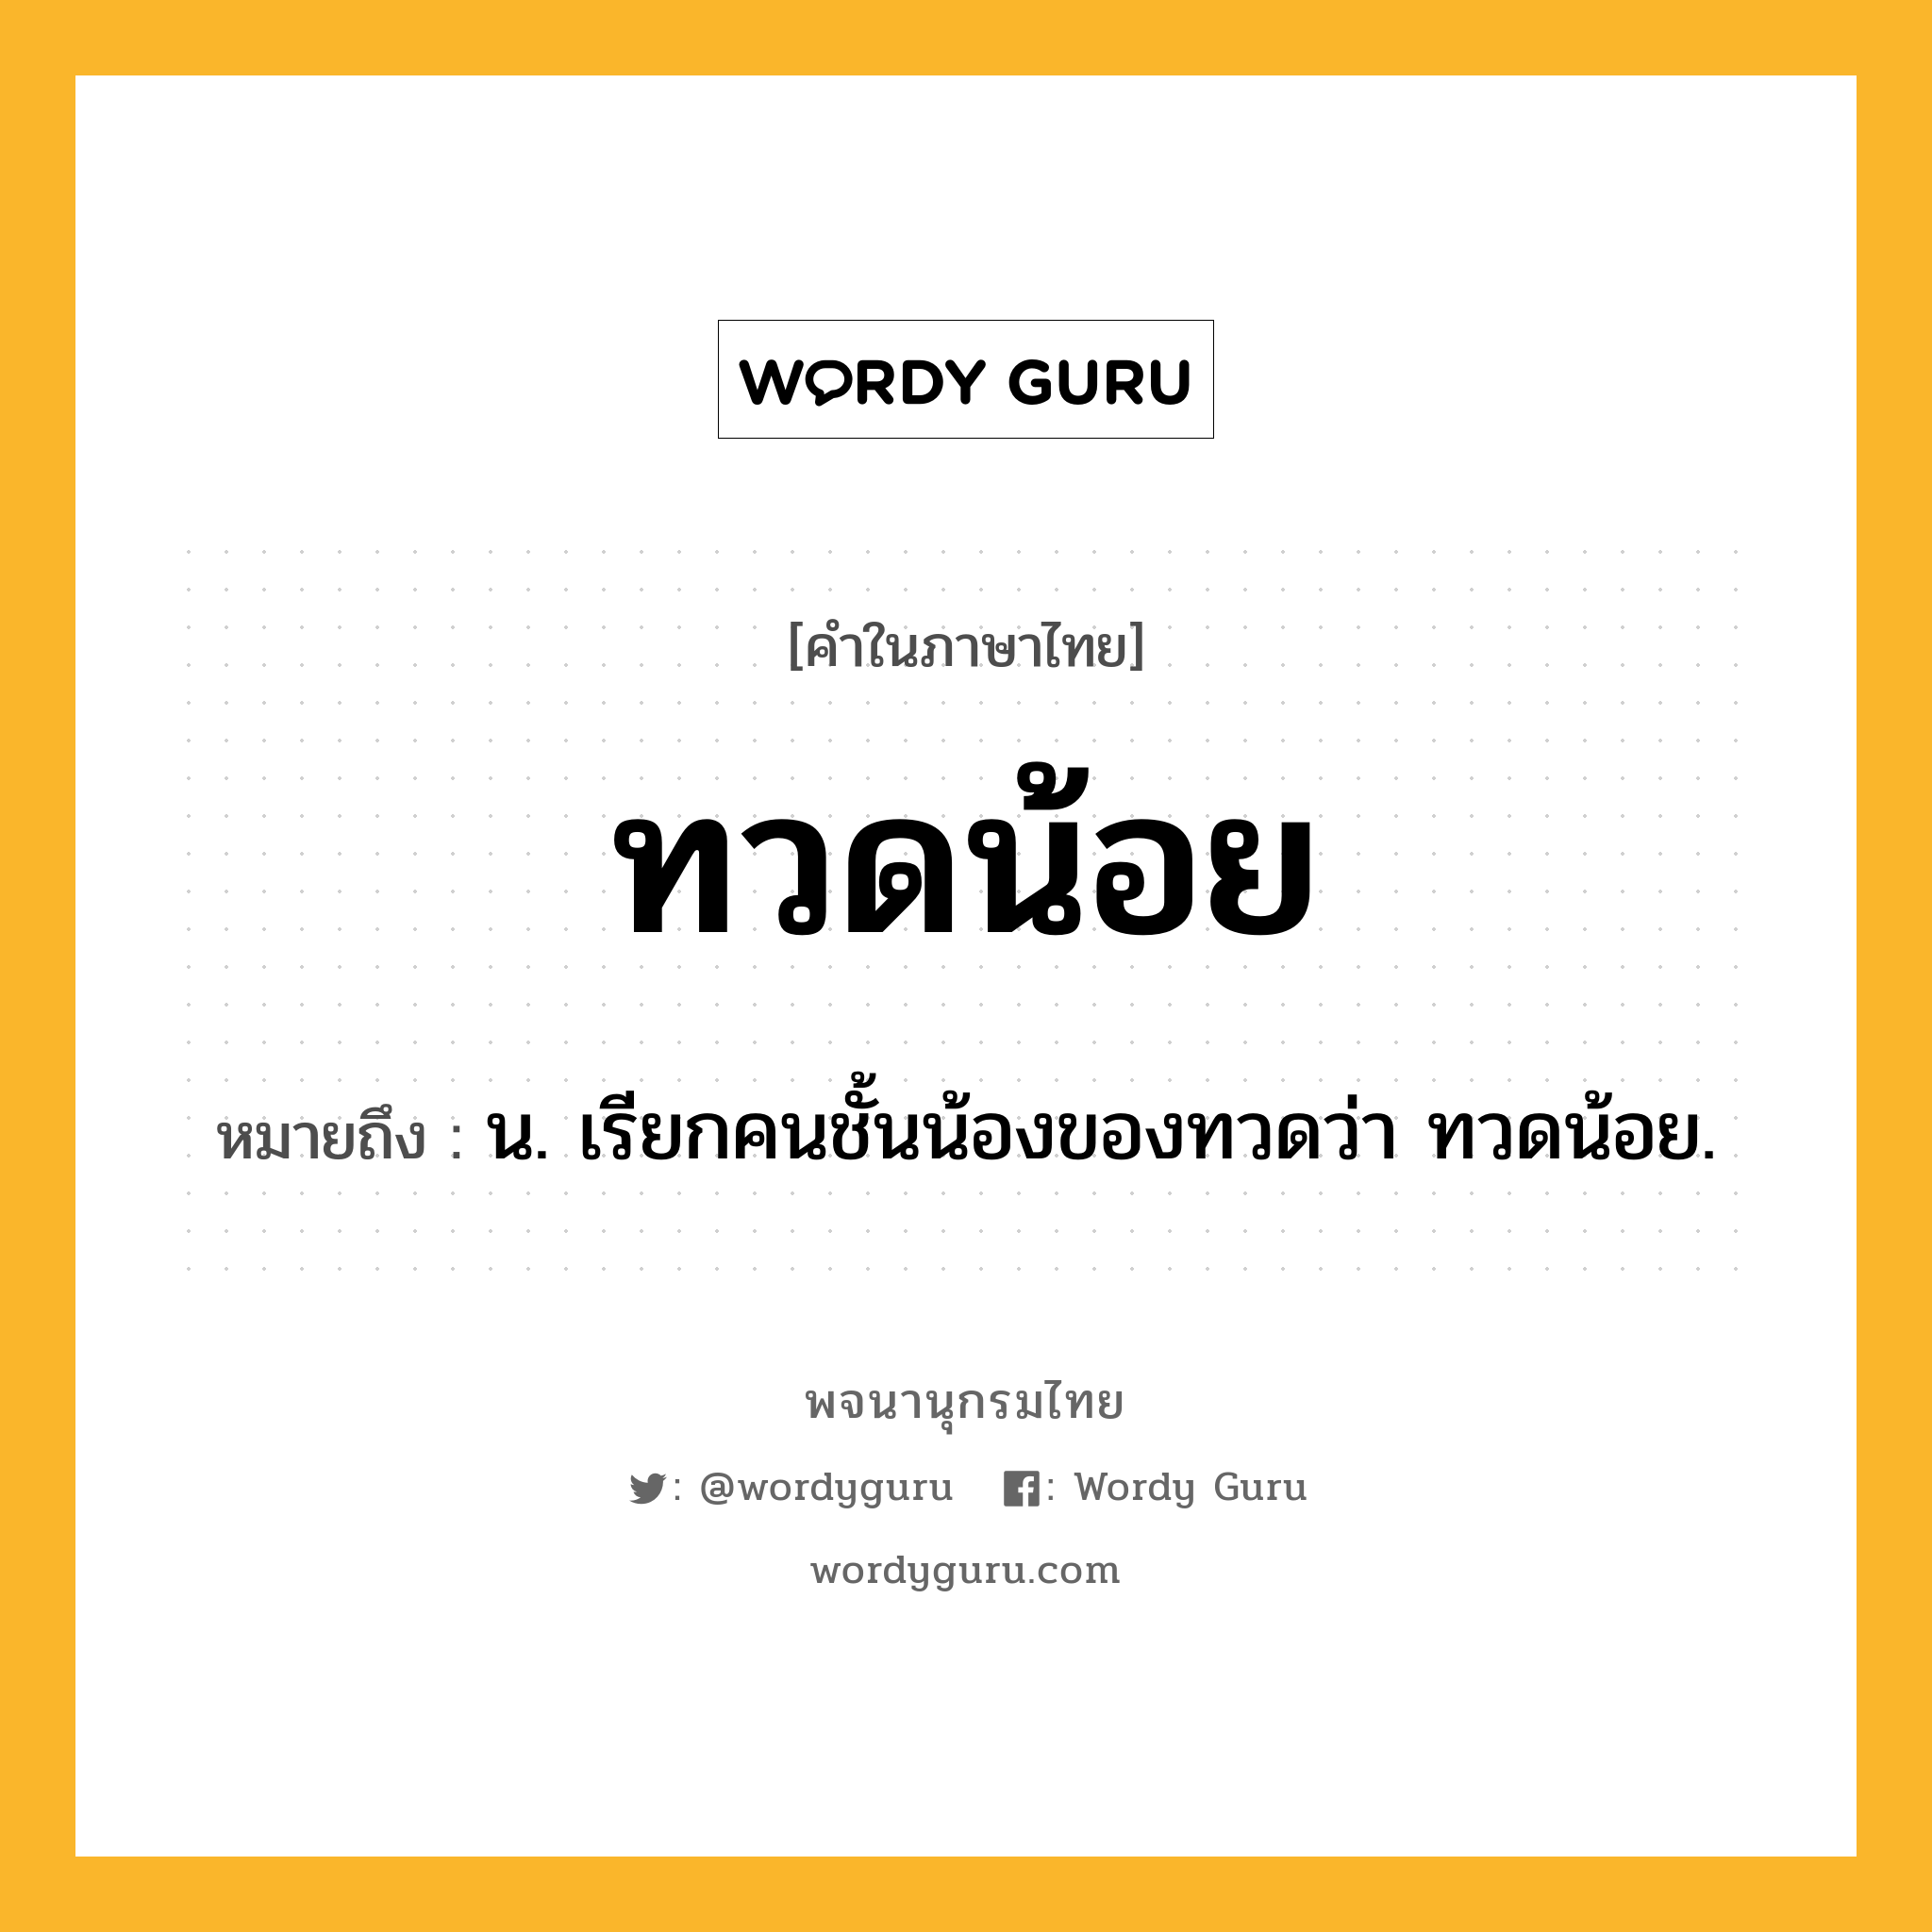 ทวดน้อย ความหมาย หมายถึงอะไร?, คำในภาษาไทย ทวดน้อย หมายถึง น. เรียกคนชั้นน้องของทวดว่า ทวดน้อย.